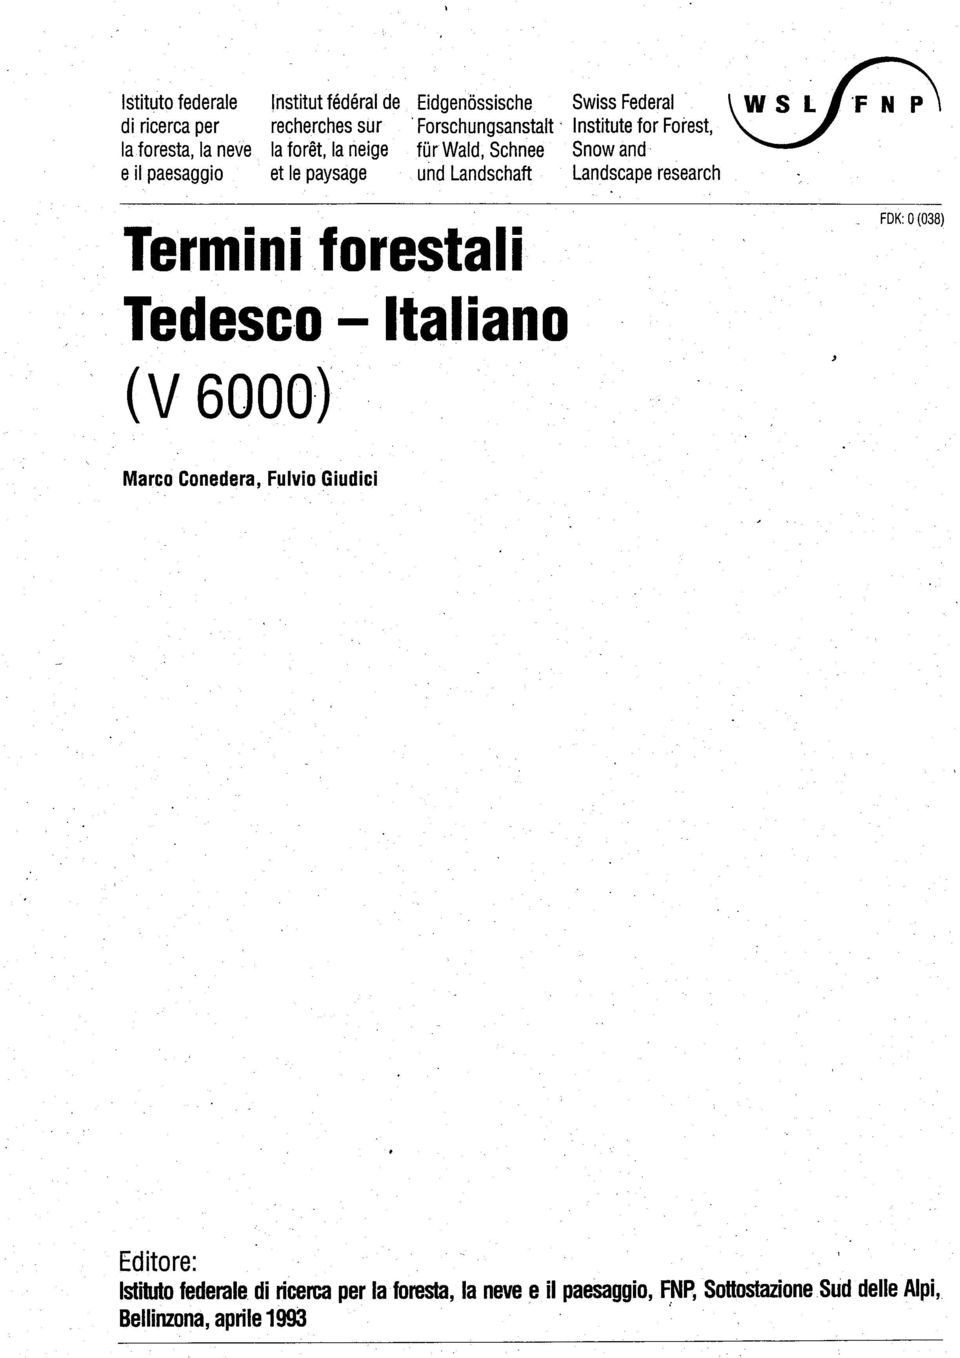 Landschaft Landscape research Termini forestali Tedesc,o - Italiano (V 6000), FOK: 0(038) Marco Conedera, Fulvio Giudici